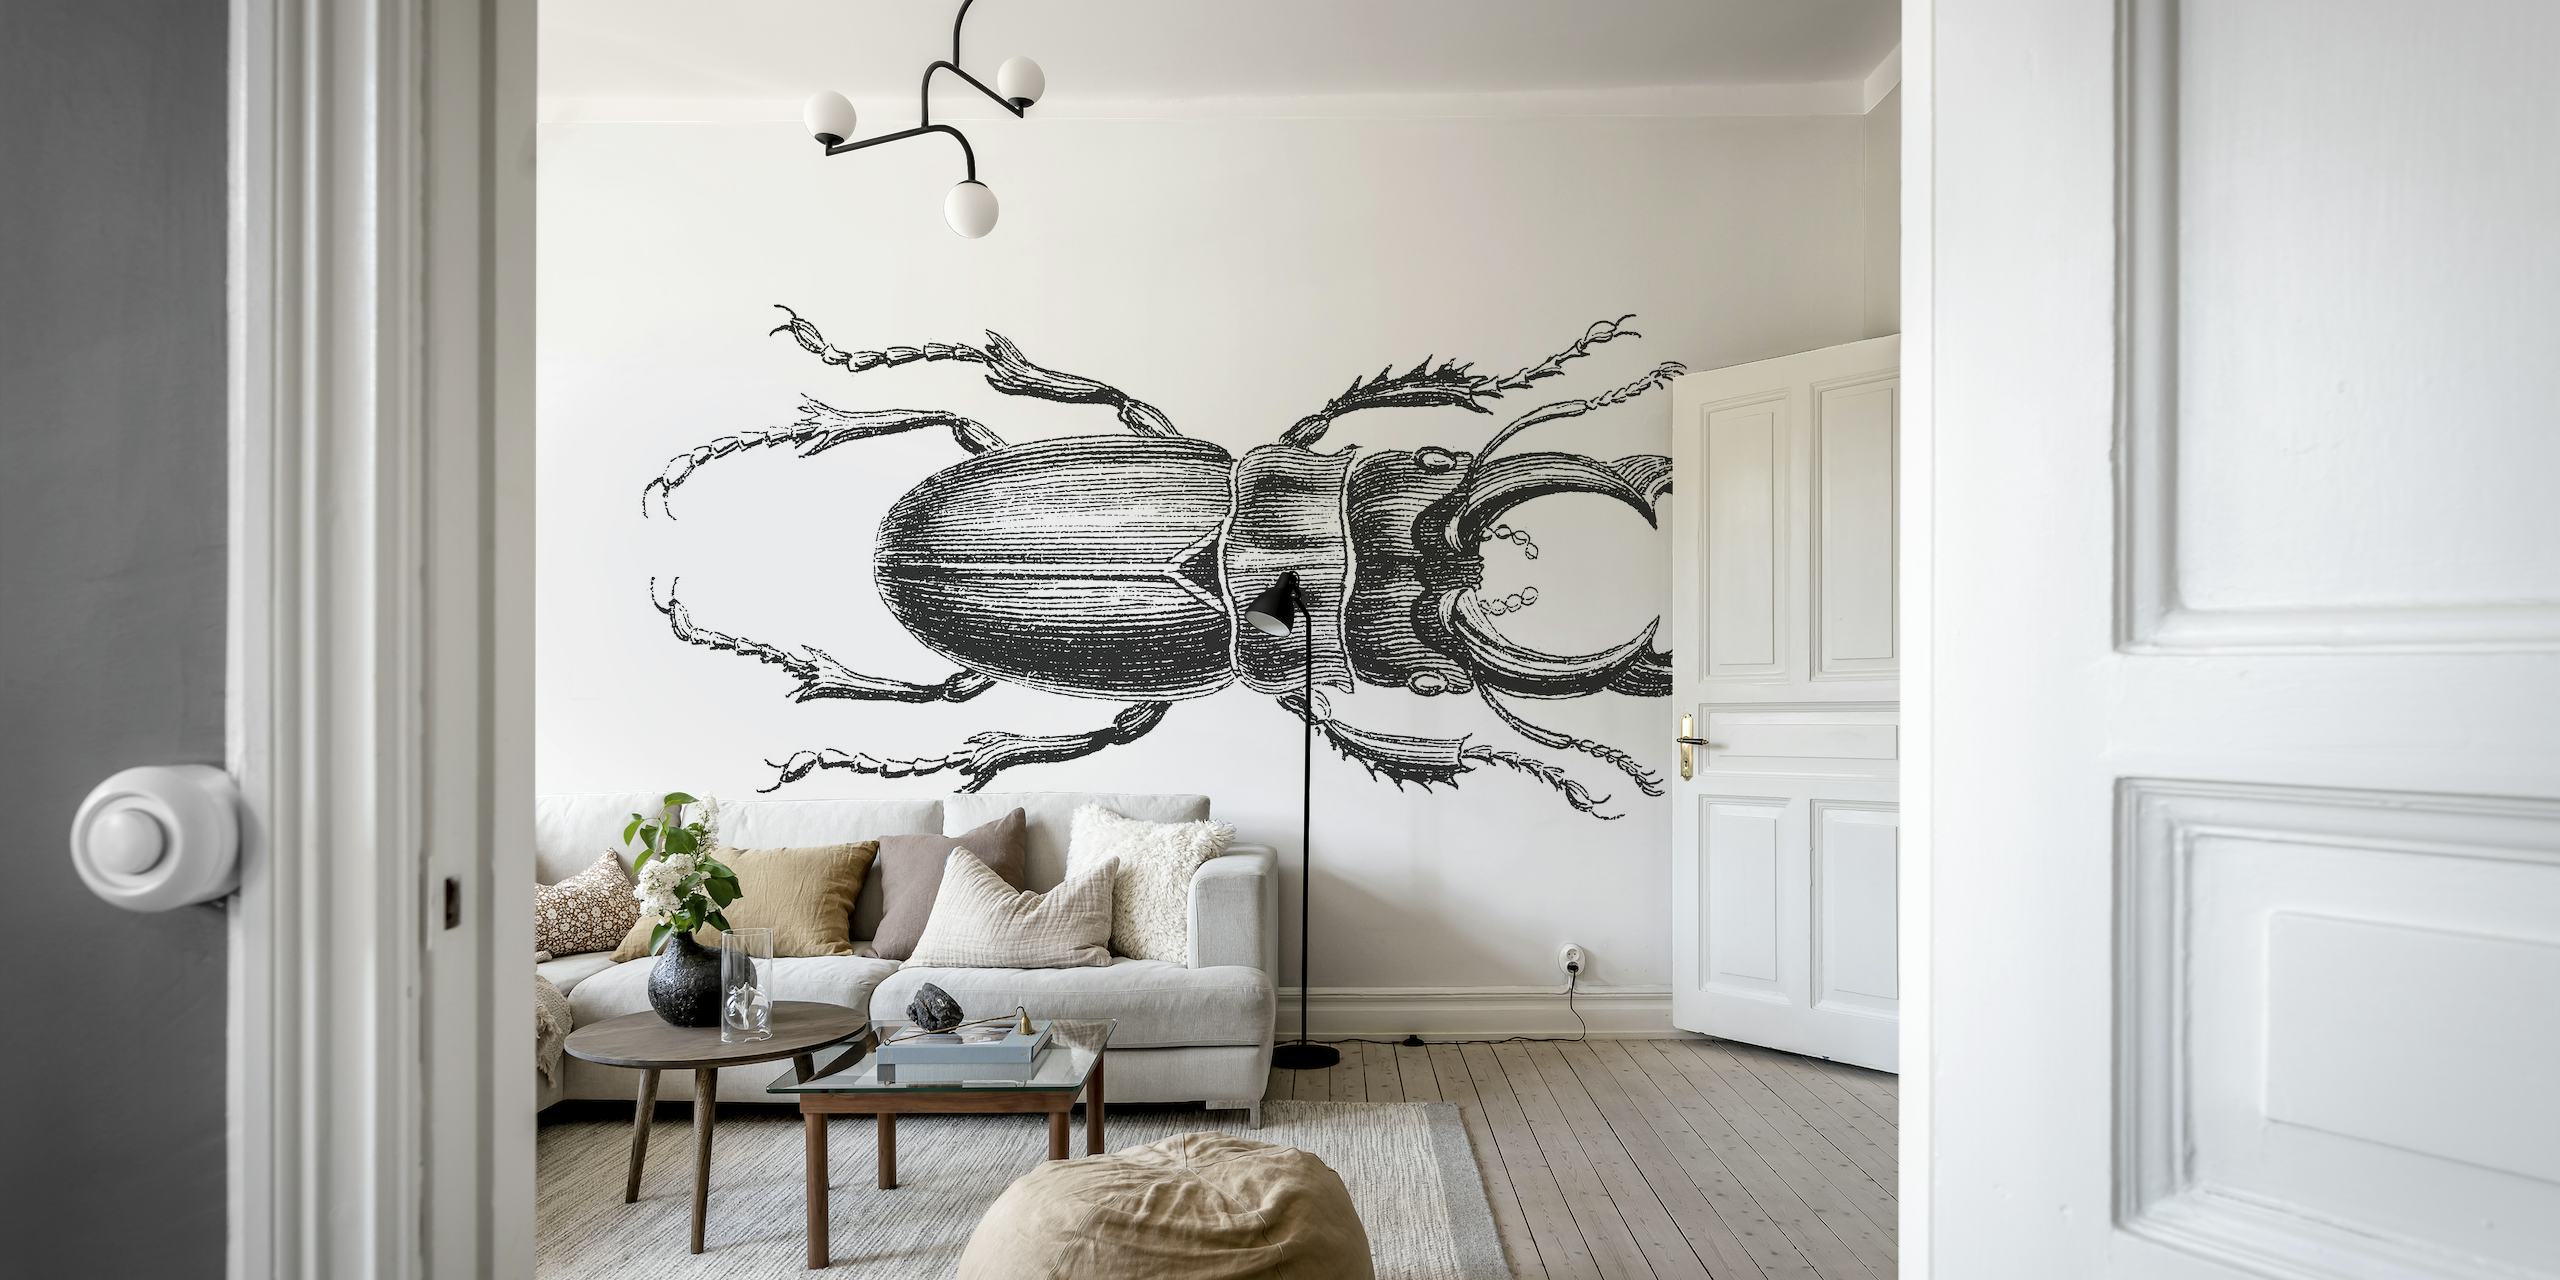 Stag Beetle Drawing veggmaleri i svart og hvit skissestil